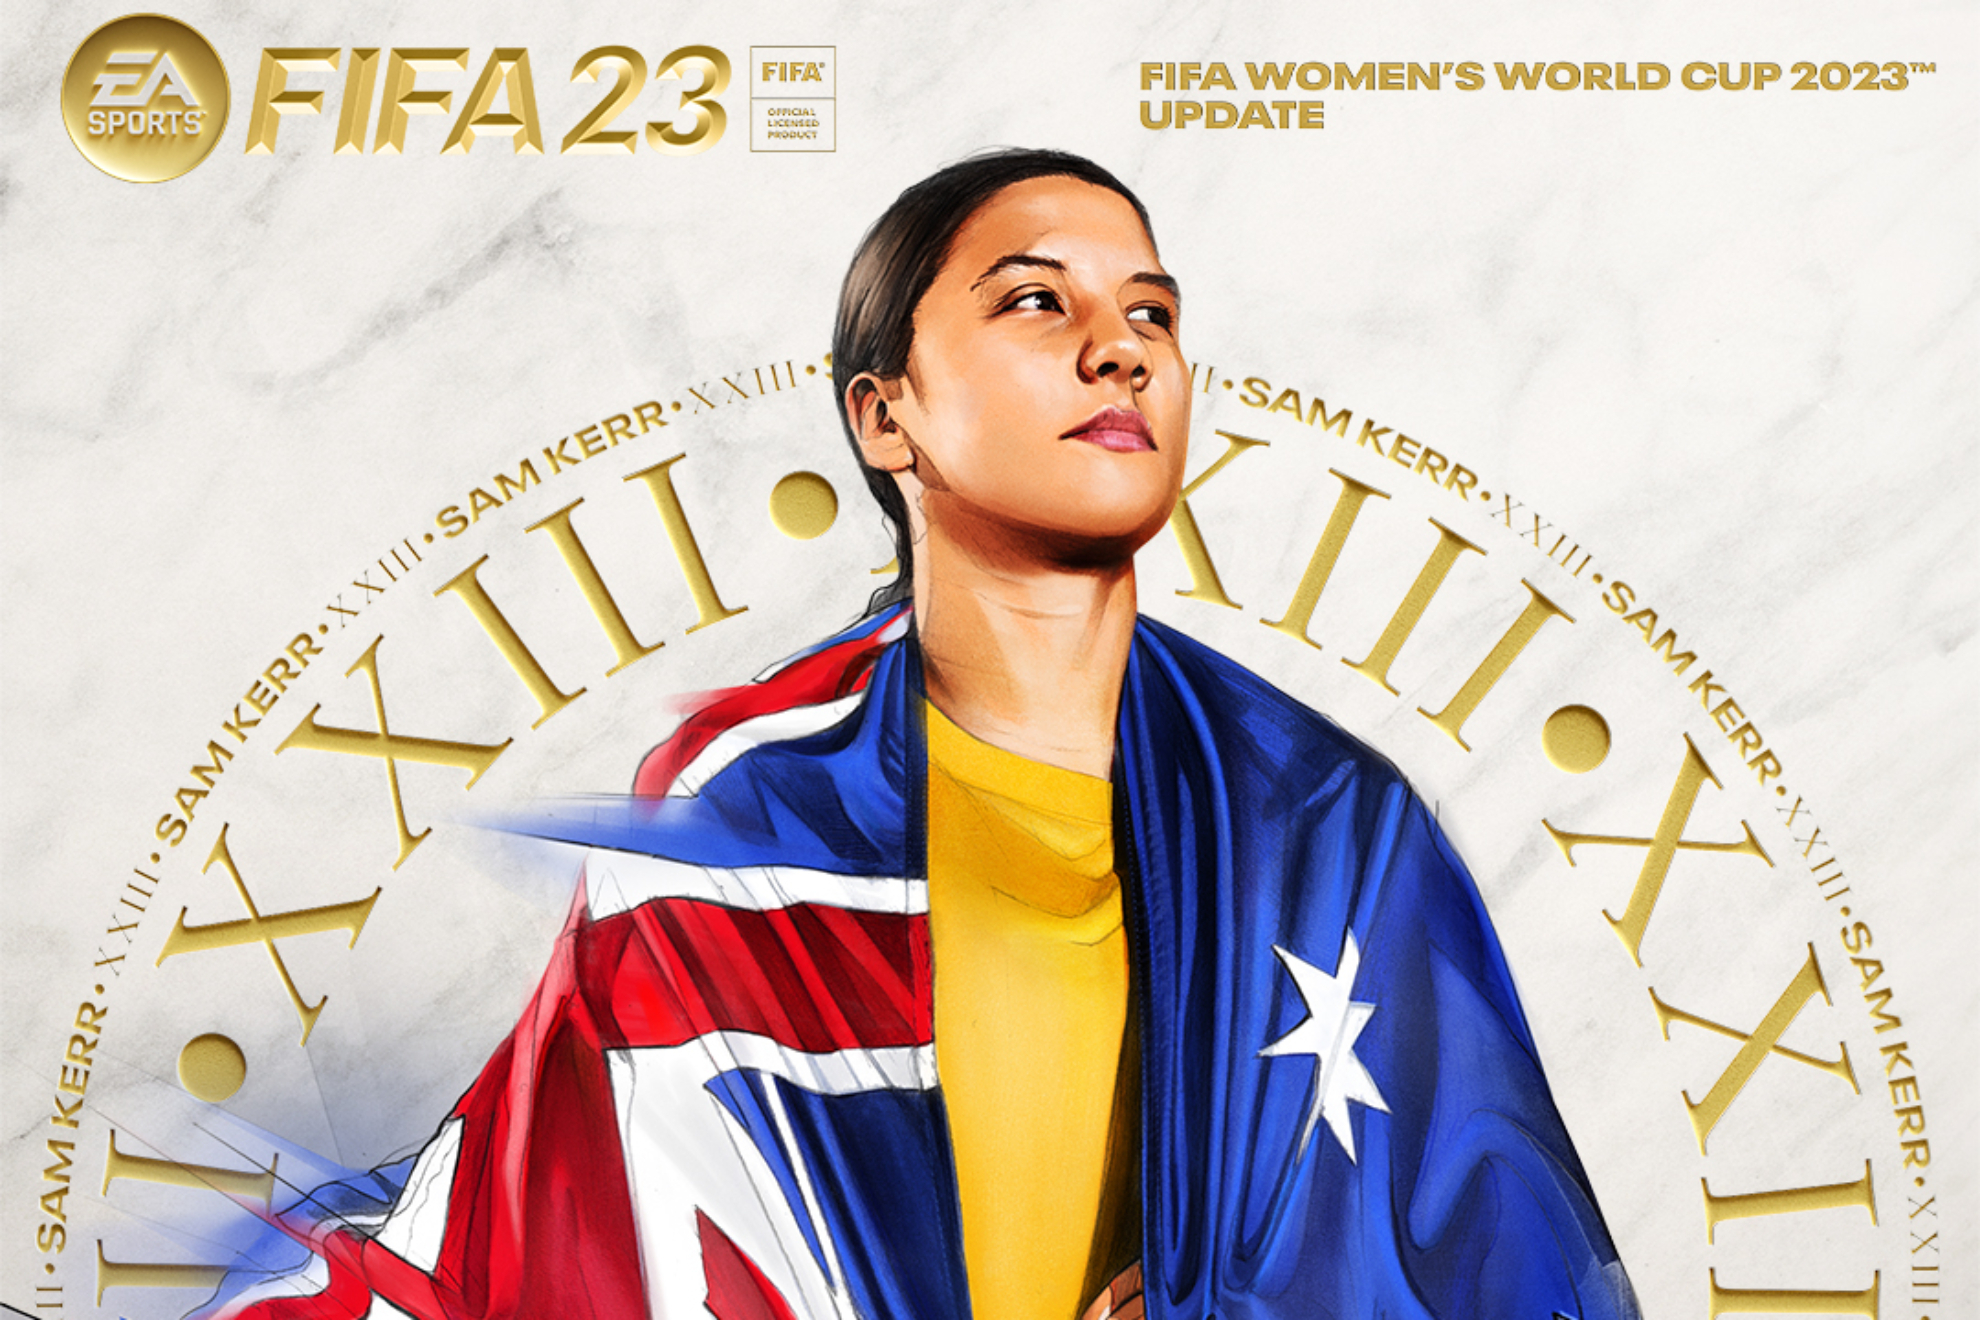 El Mundial femenino llega a FIFA 23